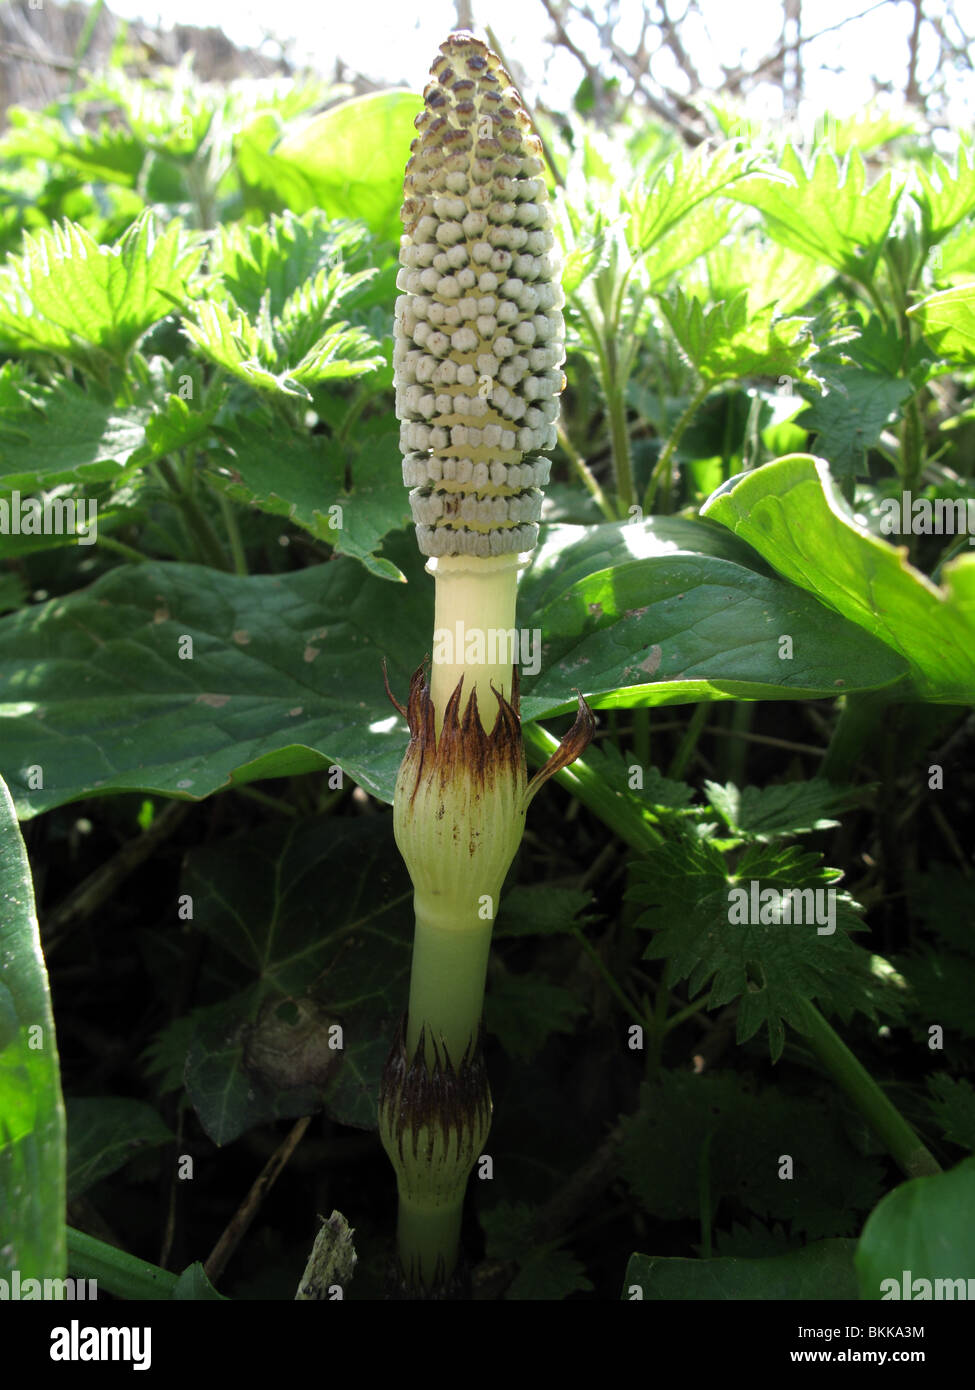 Fertile stems of  field horsetail (Equisetum arvense) Stock Photo